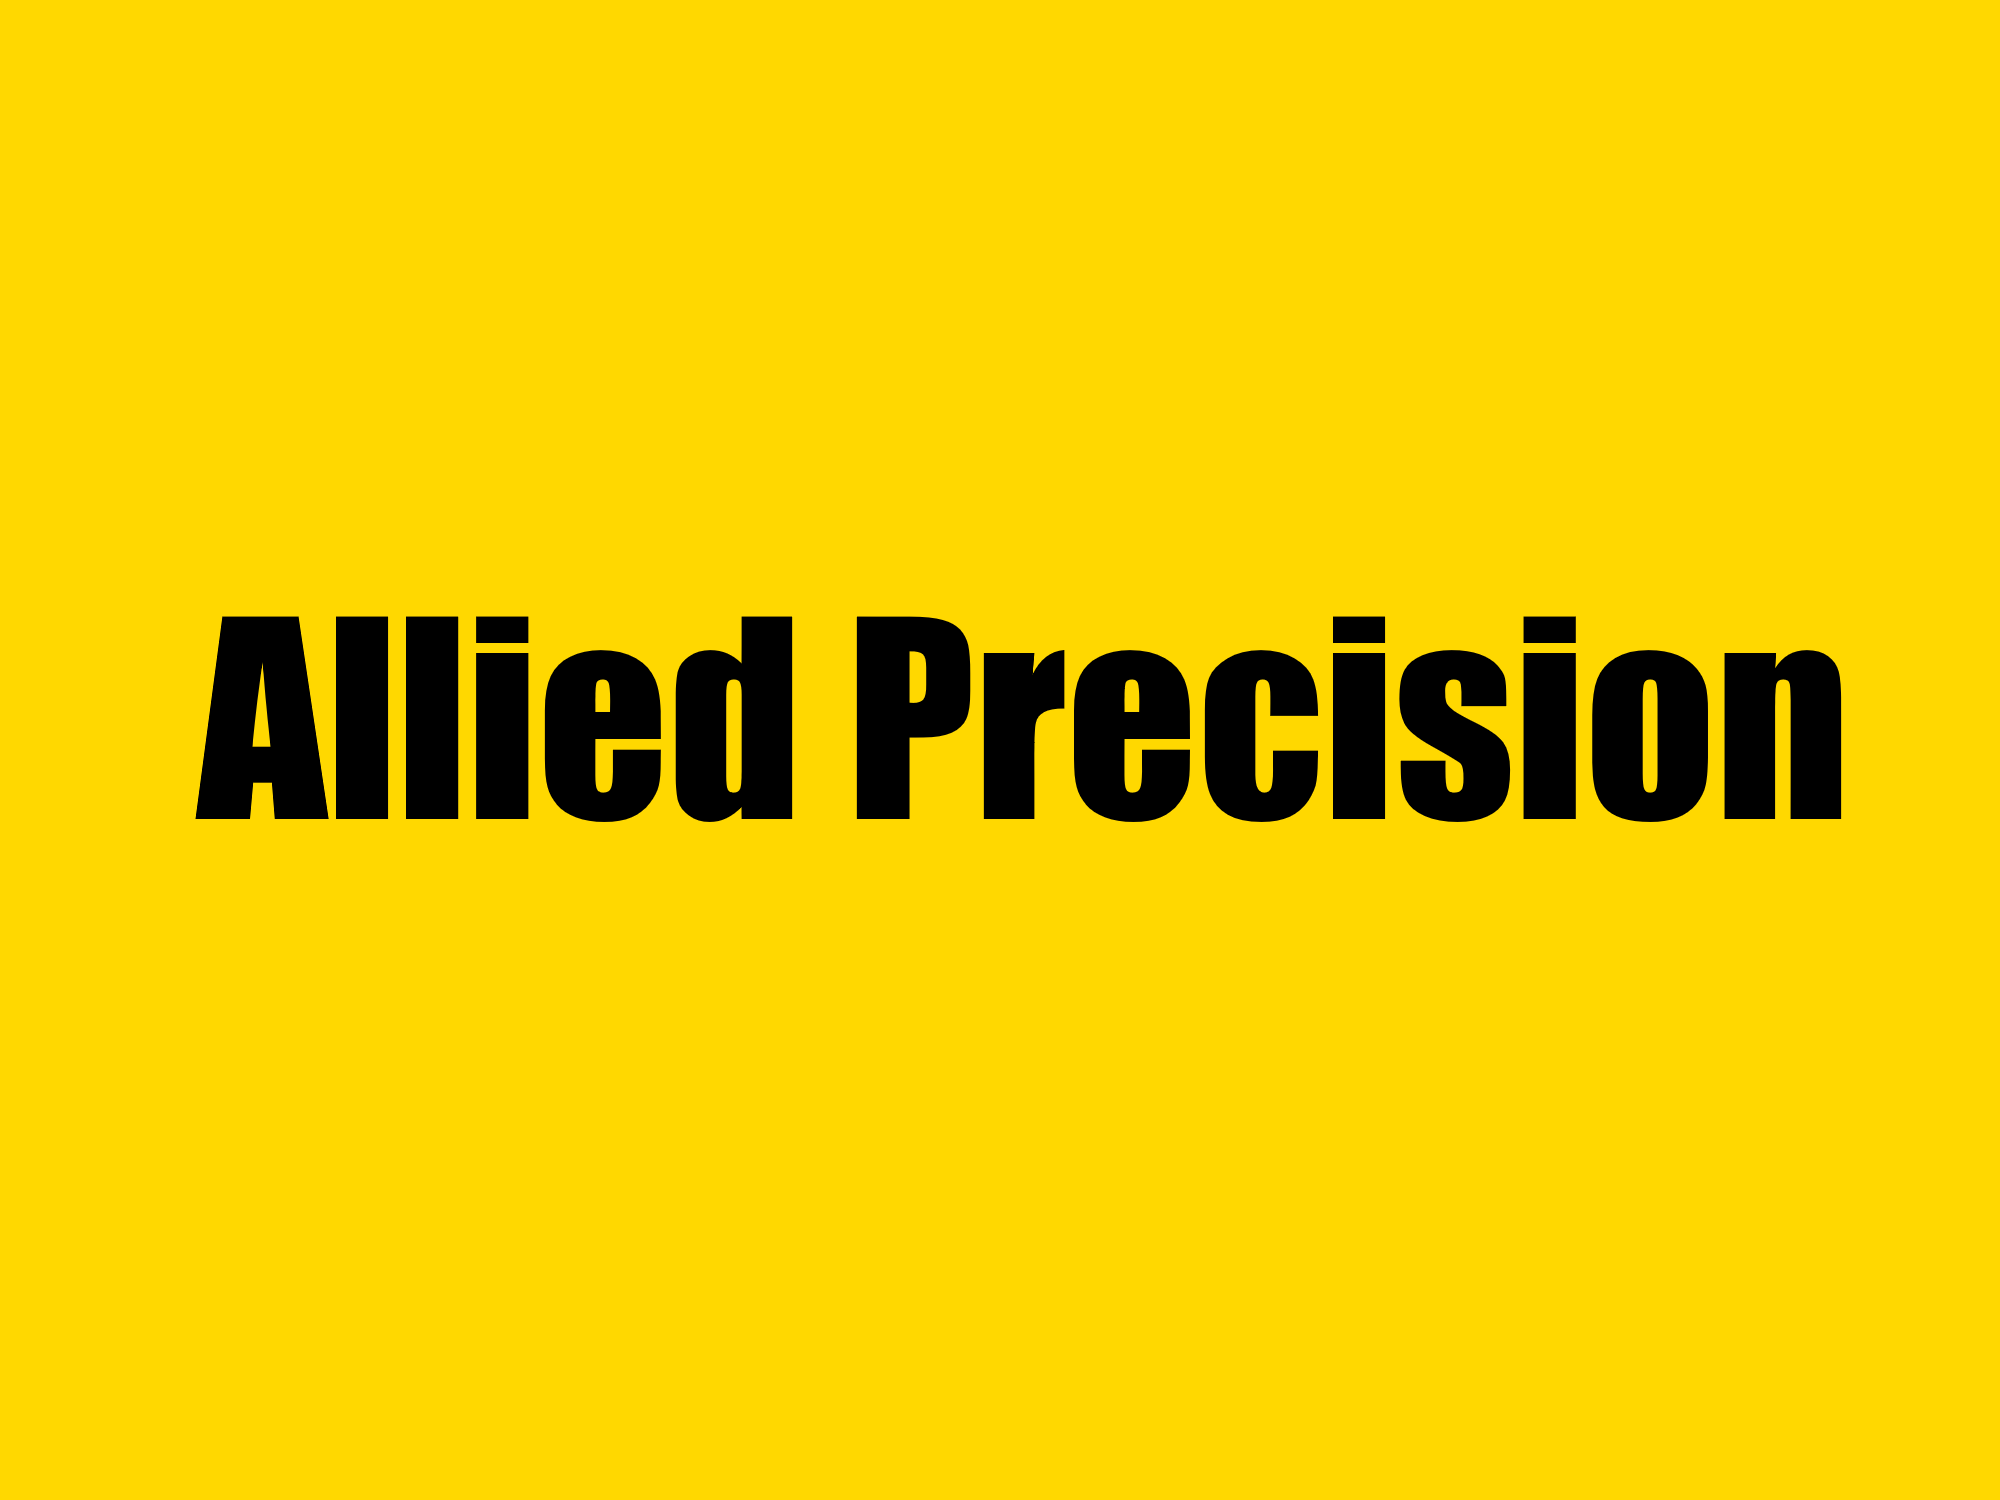 Allied Precision